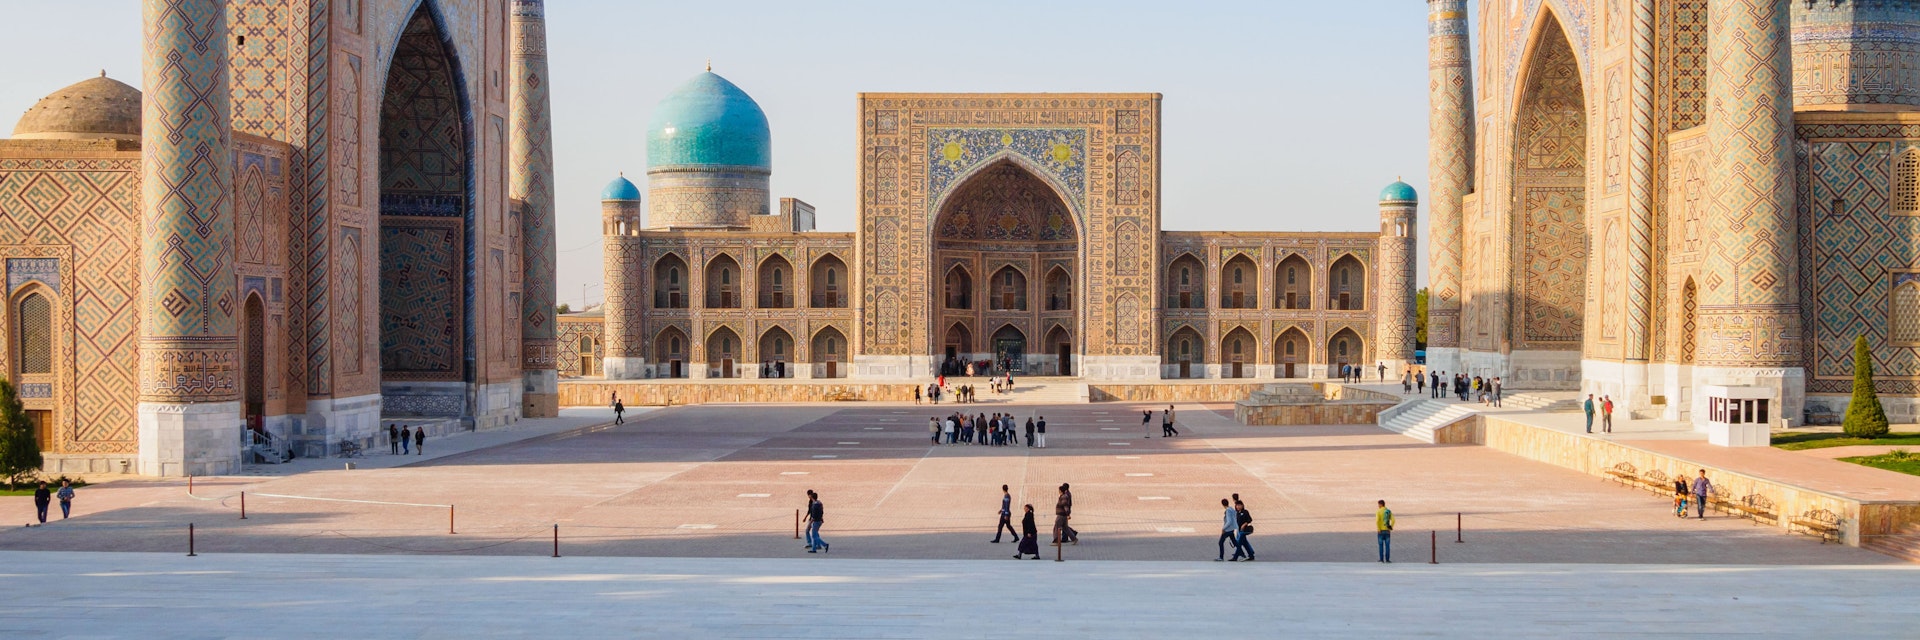 Registan square in Samarkand.
